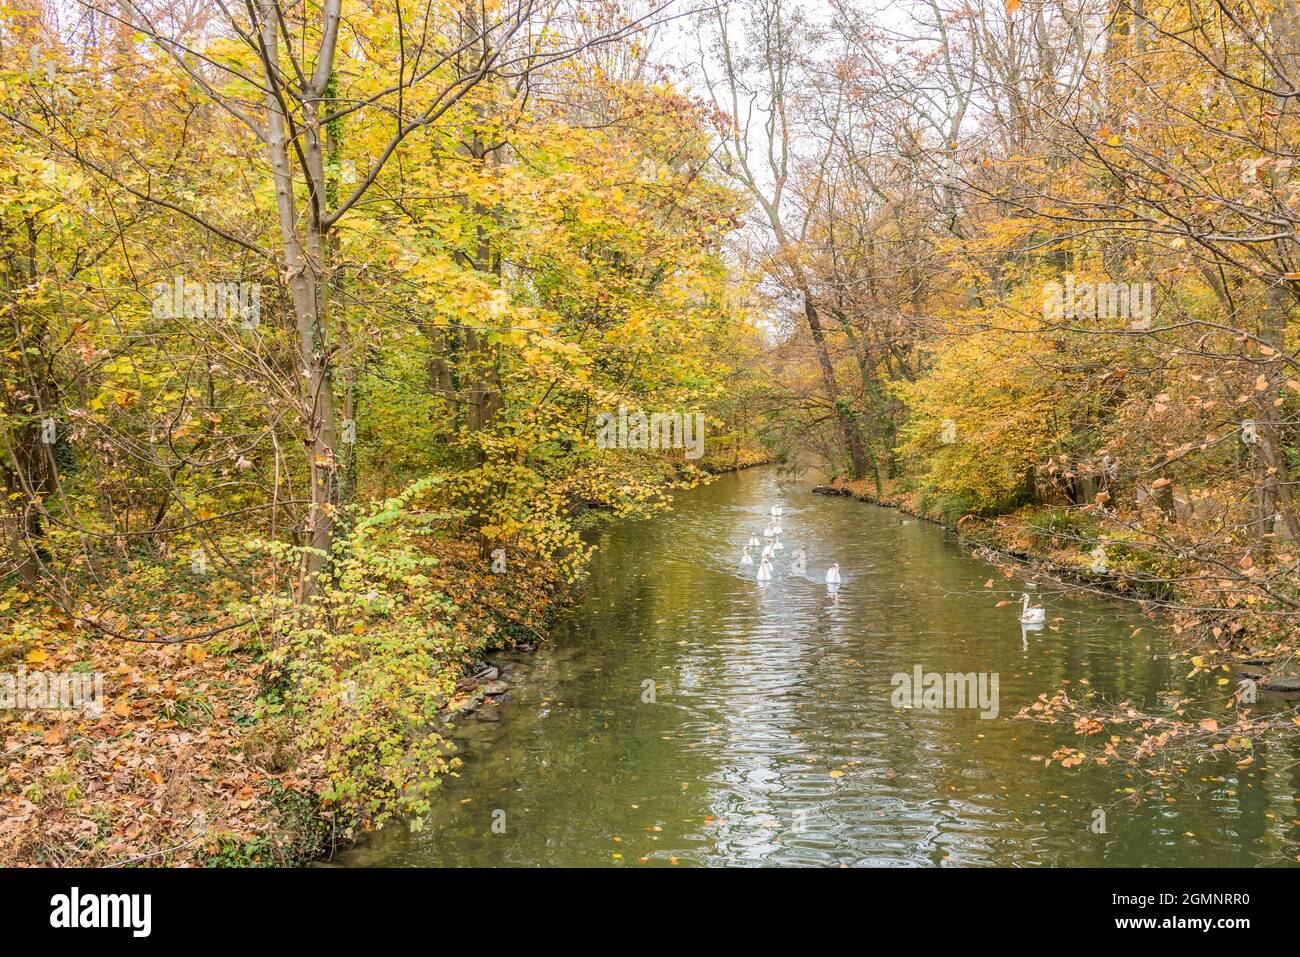 Quelques canards ou oiseaux blancs flottant sur une rivière à travers une forêt brune et verte. Concept de paysage et d'animaux. Banque D'Images